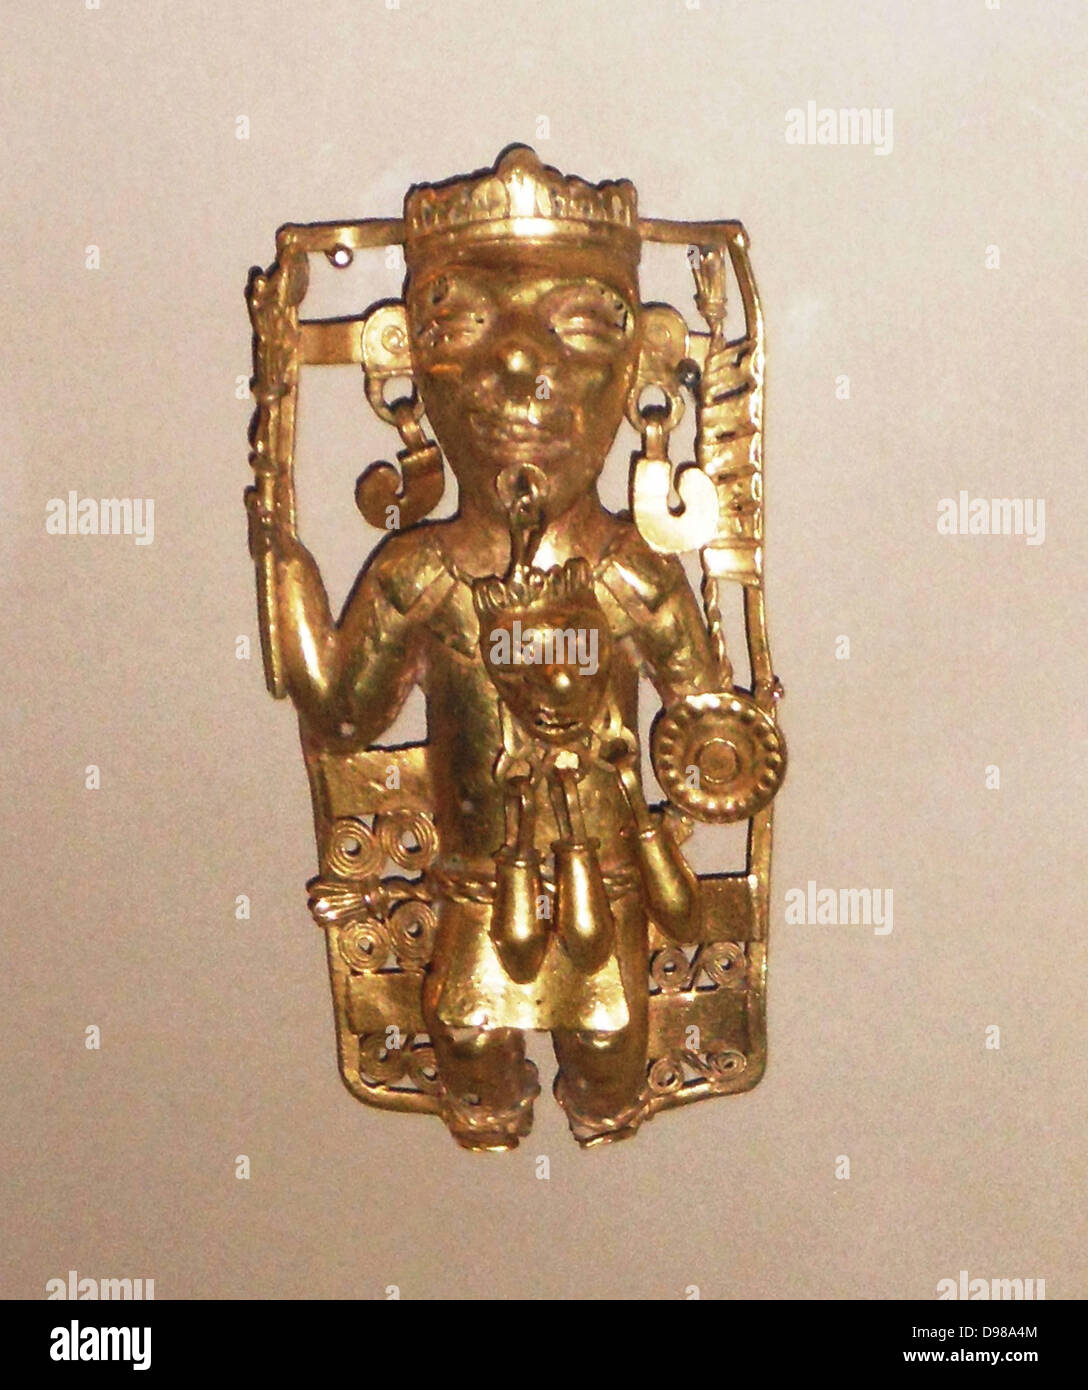 Gold Anhänger, ein Lineal mit Ritual regalia AD 1200-1521. Dieser Herrscher, reich mit Kopfschmuck Halskette und Ohrringe geschmückt, trägt eine Schlange personal Streitaxt in der rechten Hand und ein Schild in der linken. Von seiner Hüfte Stecker hängt eine Maske, möglicherweise eine uralte Reliquie. Aztec Stockfoto